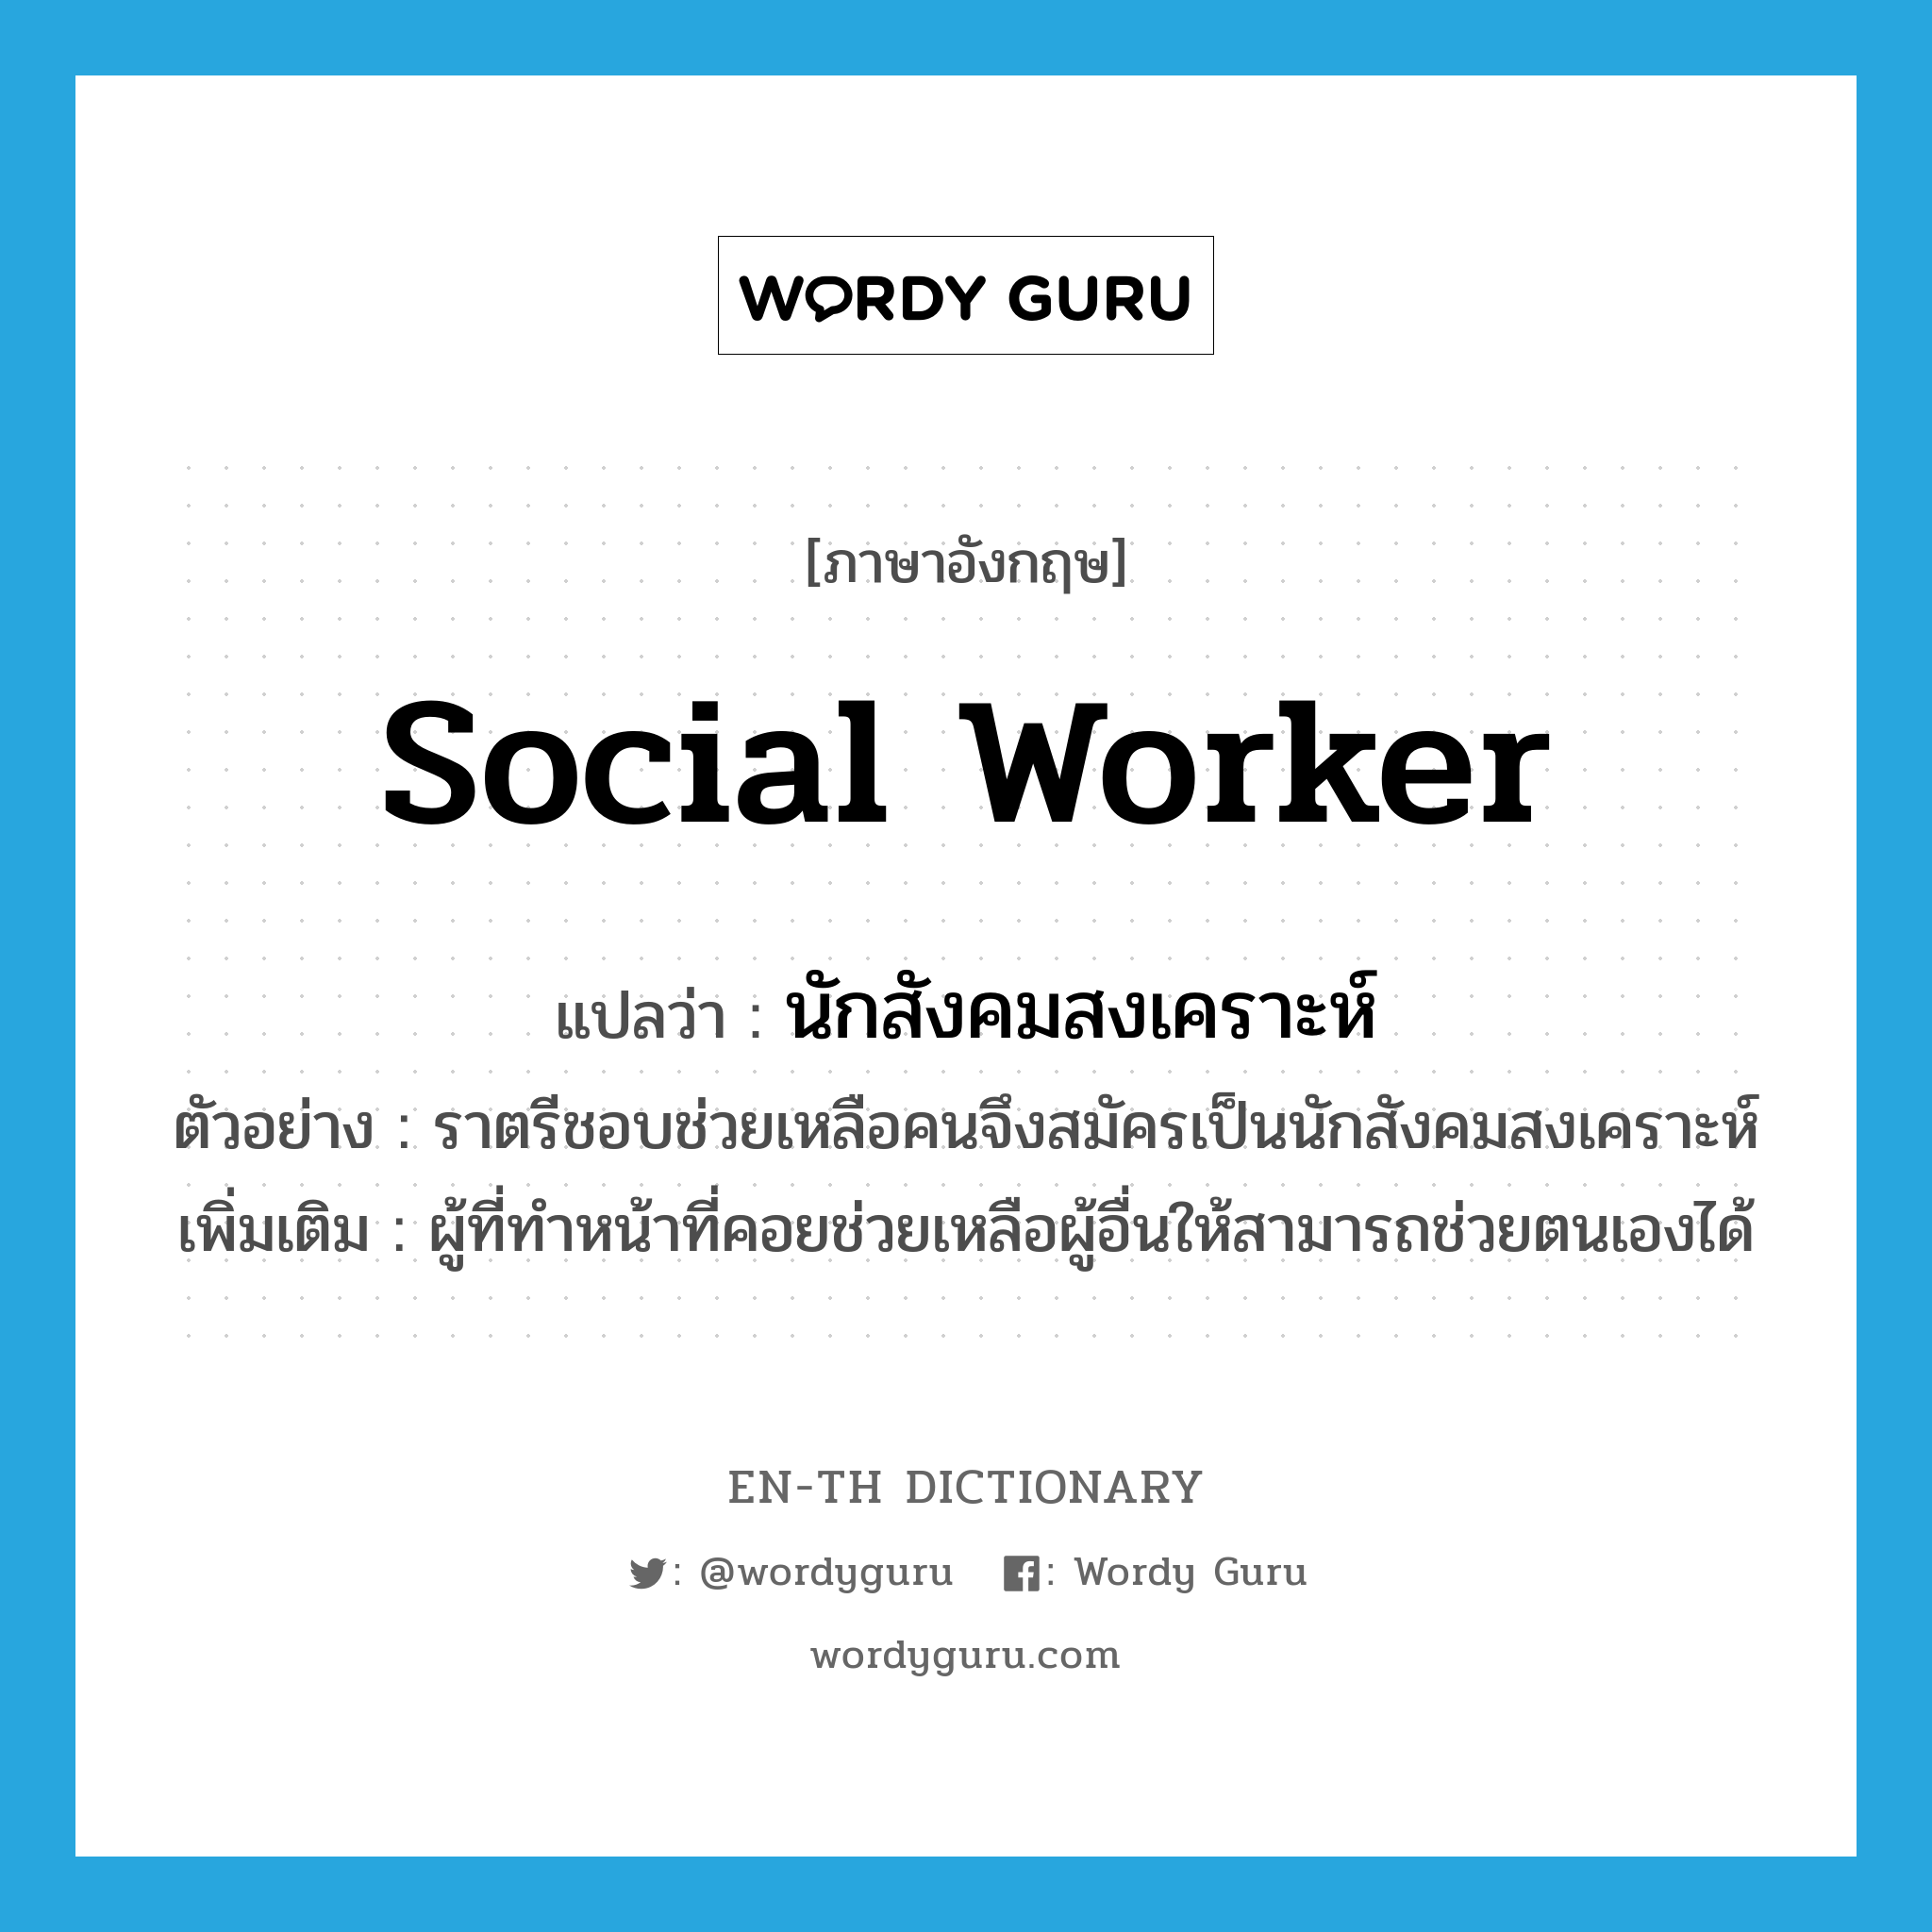 นักสังคมสงเคราะห์ ภาษาอังกฤษ?, คำศัพท์ภาษาอังกฤษ นักสังคมสงเคราะห์ แปลว่า social worker ประเภท N ตัวอย่าง ราตรีชอบช่วยเหลือคนจึงสมัครเป็นนักสังคมสงเคราะห์ เพิ่มเติม ผู้ที่ทำหน้าที่คอยช่วยเหลือผู้อื่นให้สามารถช่วยตนเองได้ หมวด N